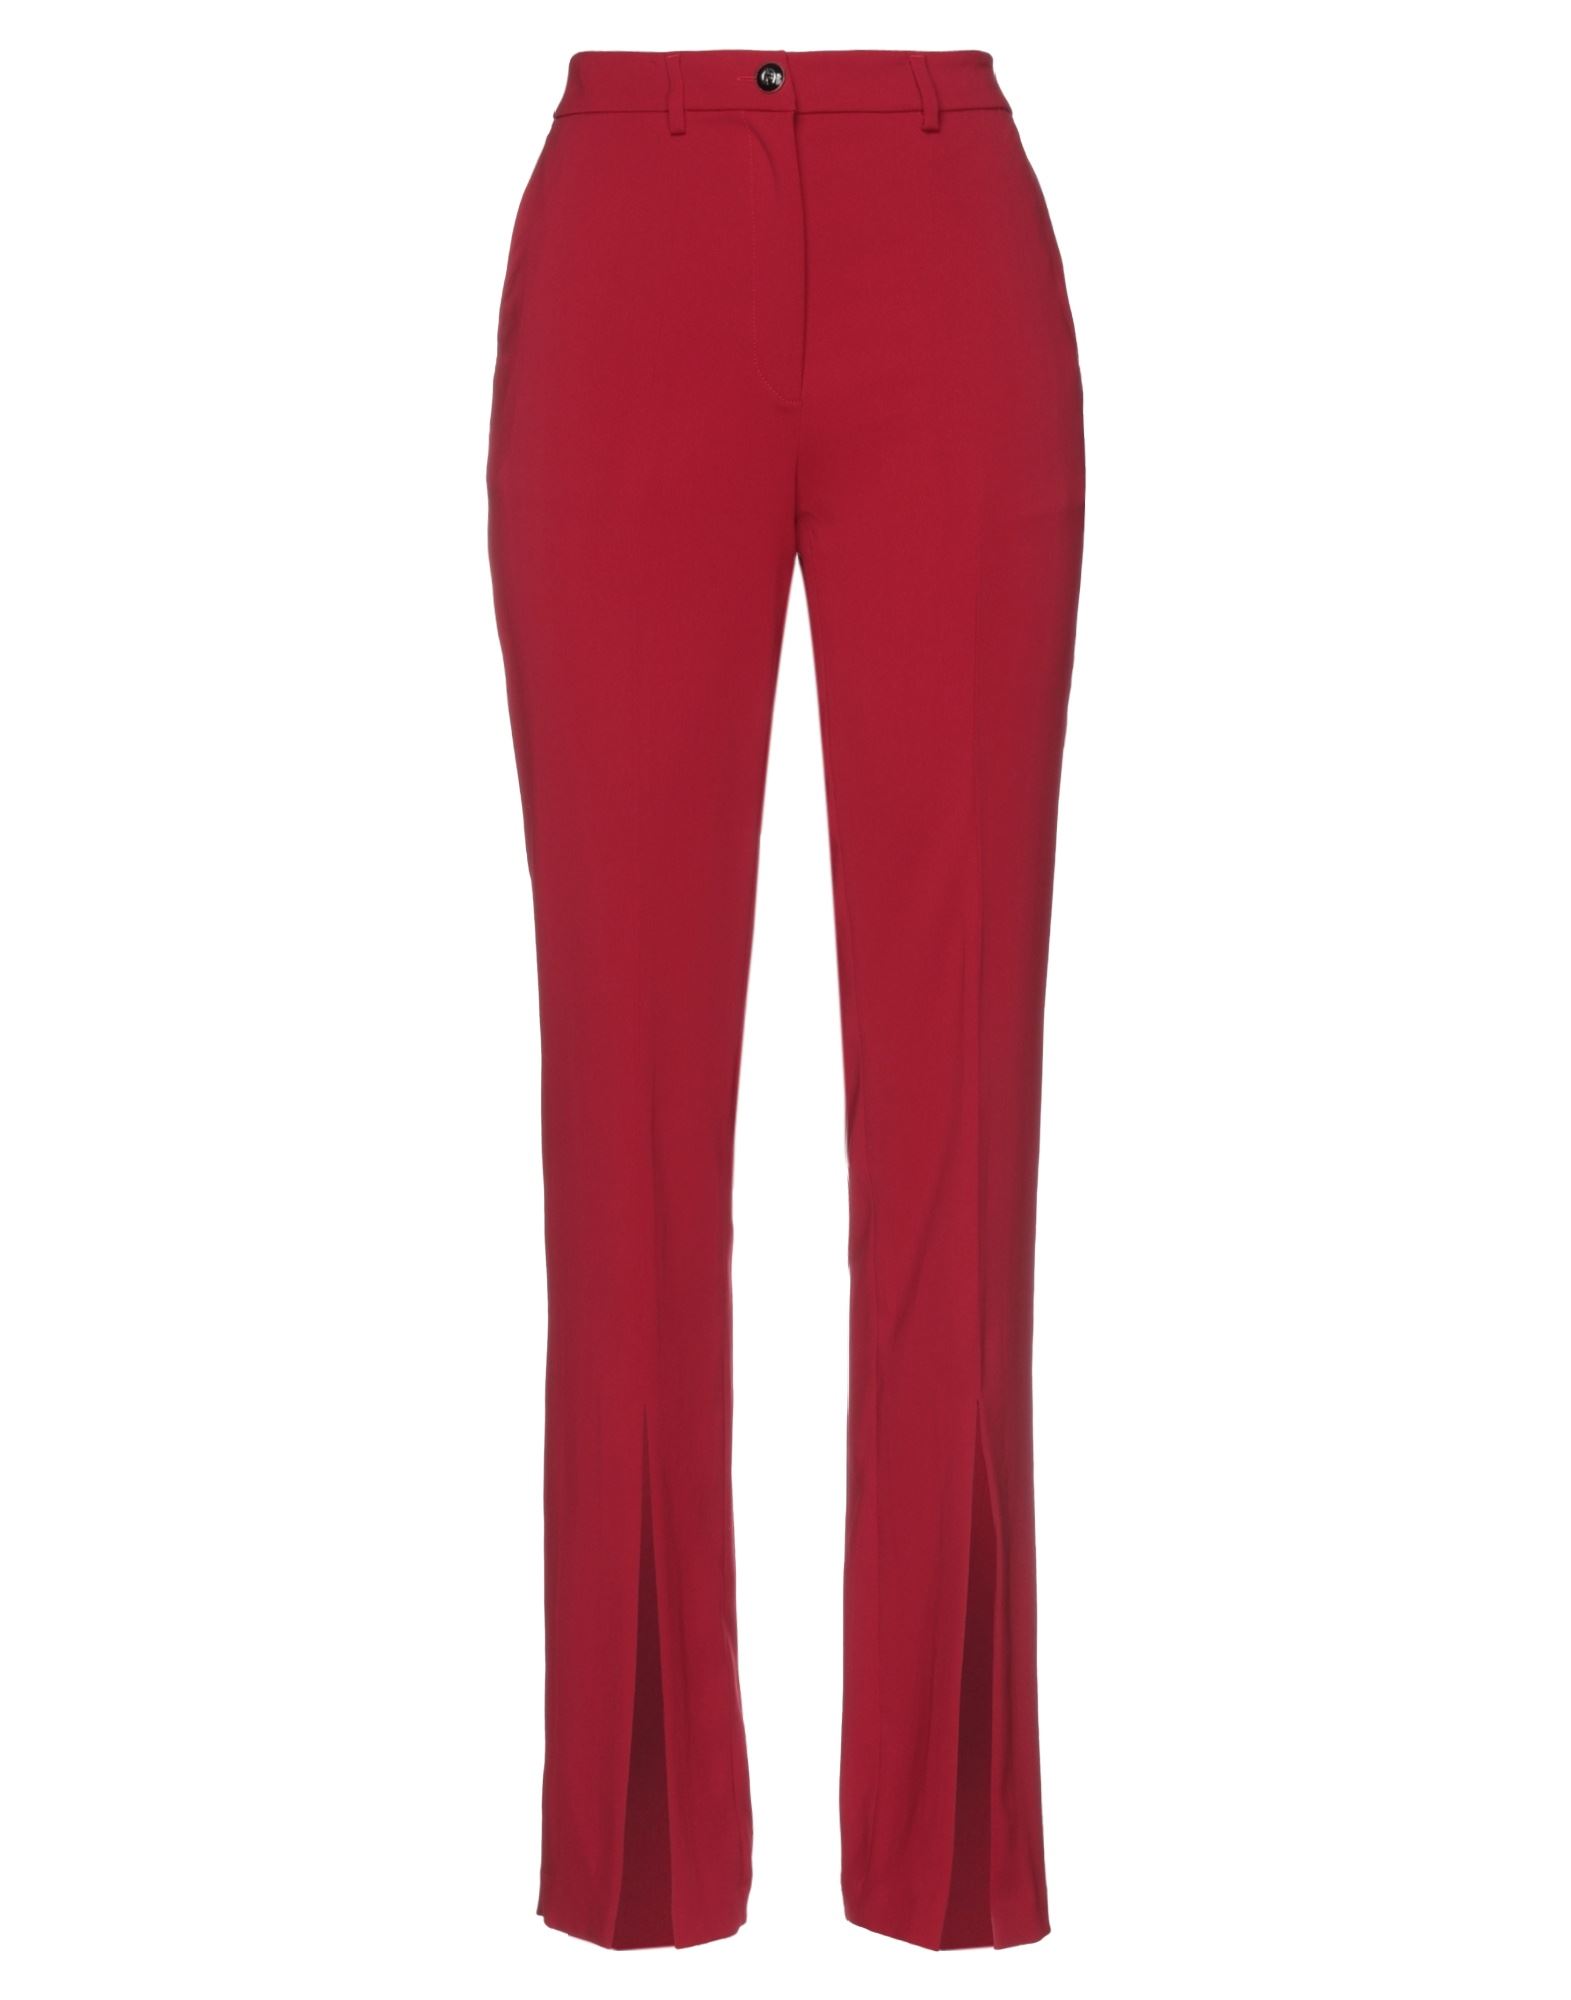 Gaelle Paris Pants In Red